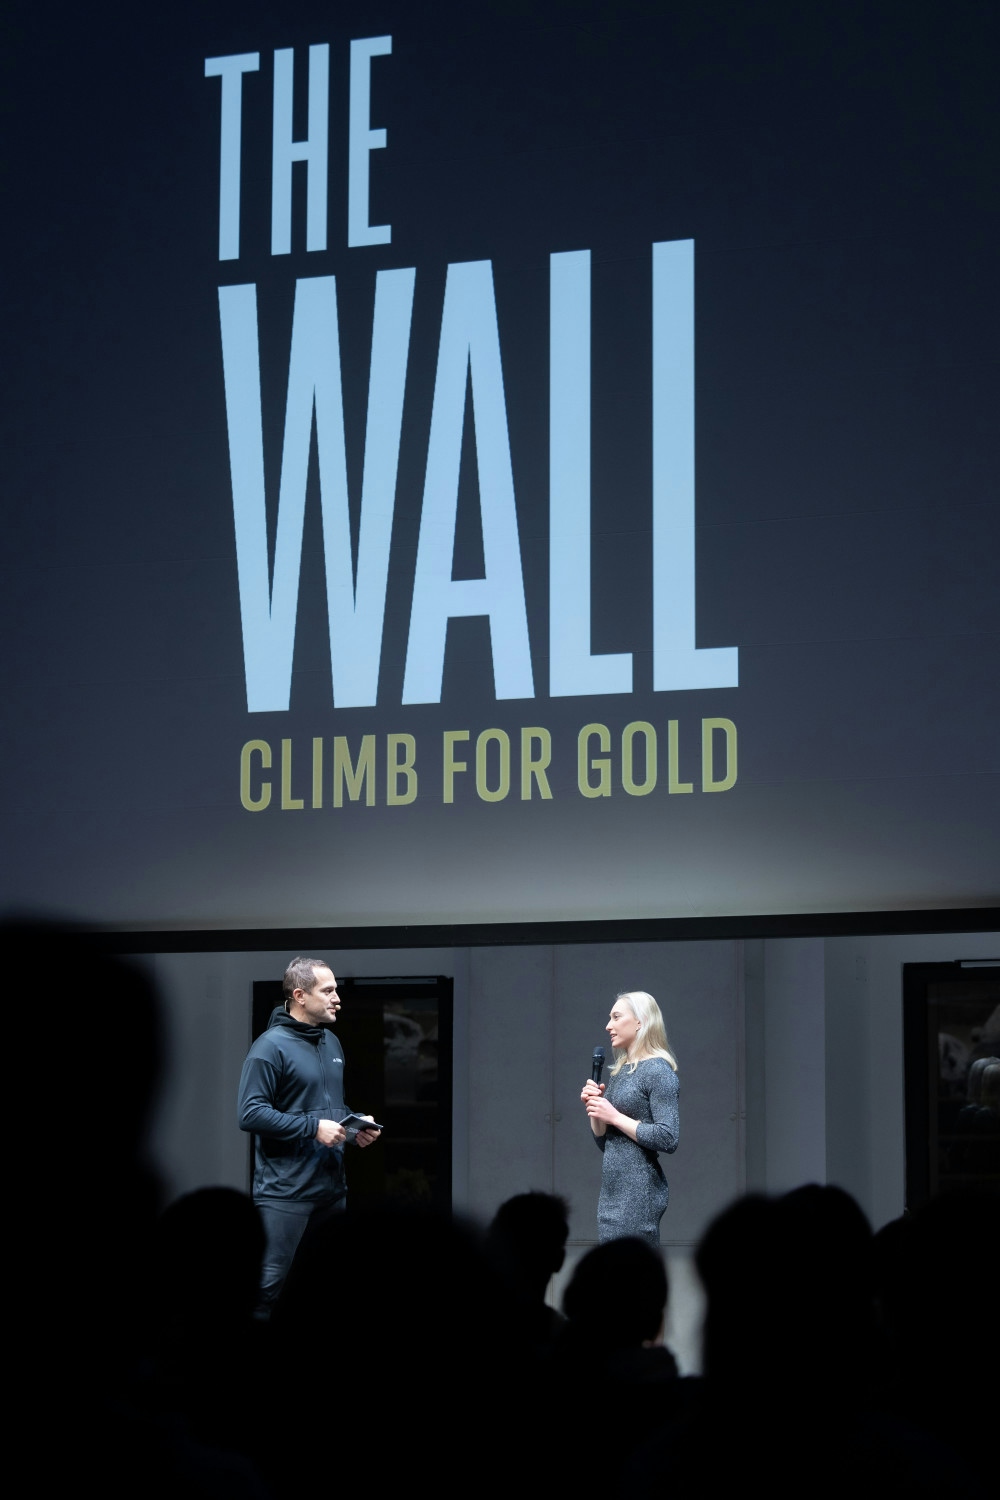 Organizacija predpremiere filma The Wall - Climb for Gold v Cukrarni v Ljubljani. Organizacija dogodkov Paideia Events.